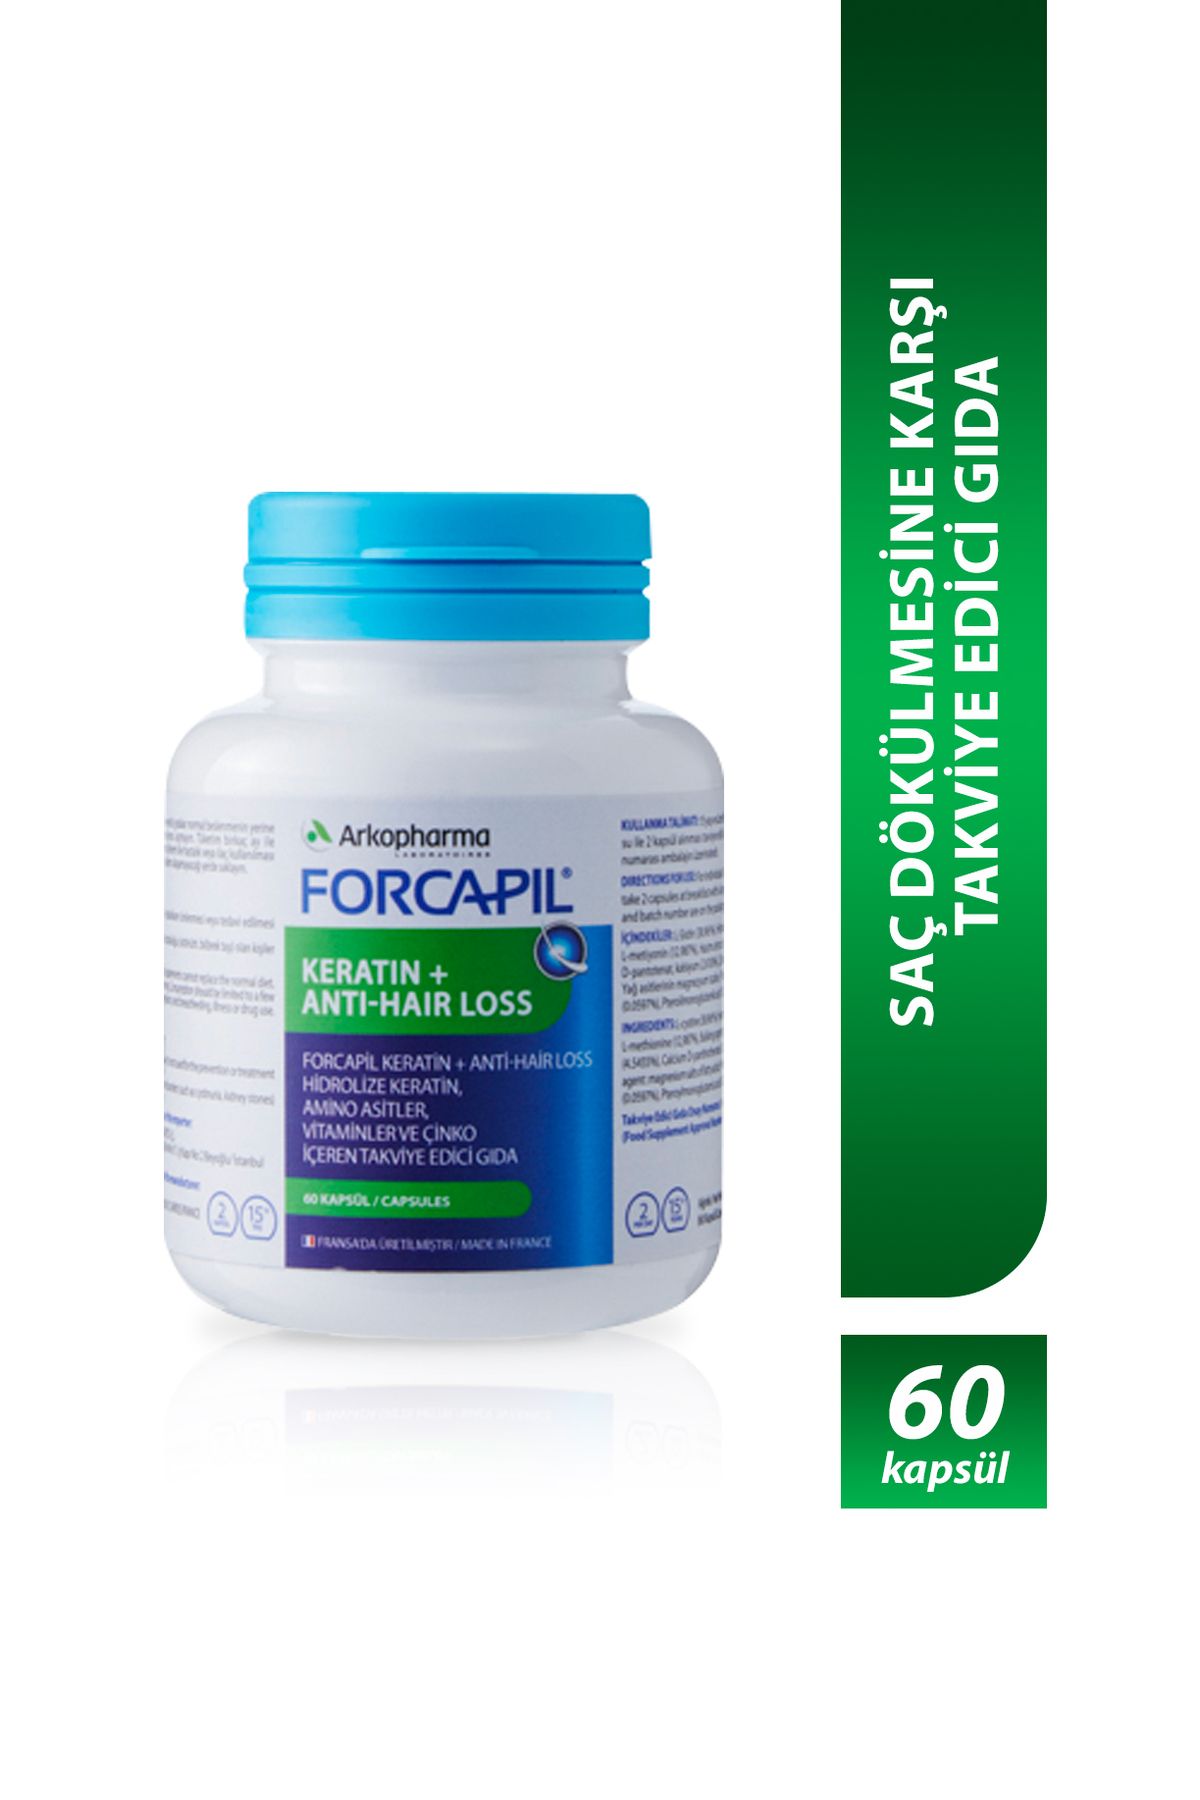 Arkopharma Forcapil® Keratin + Anti-hair Loss – Saç Dökülmesine Karşı Takviye Edici Gıda - 60 Kapsül 25050839